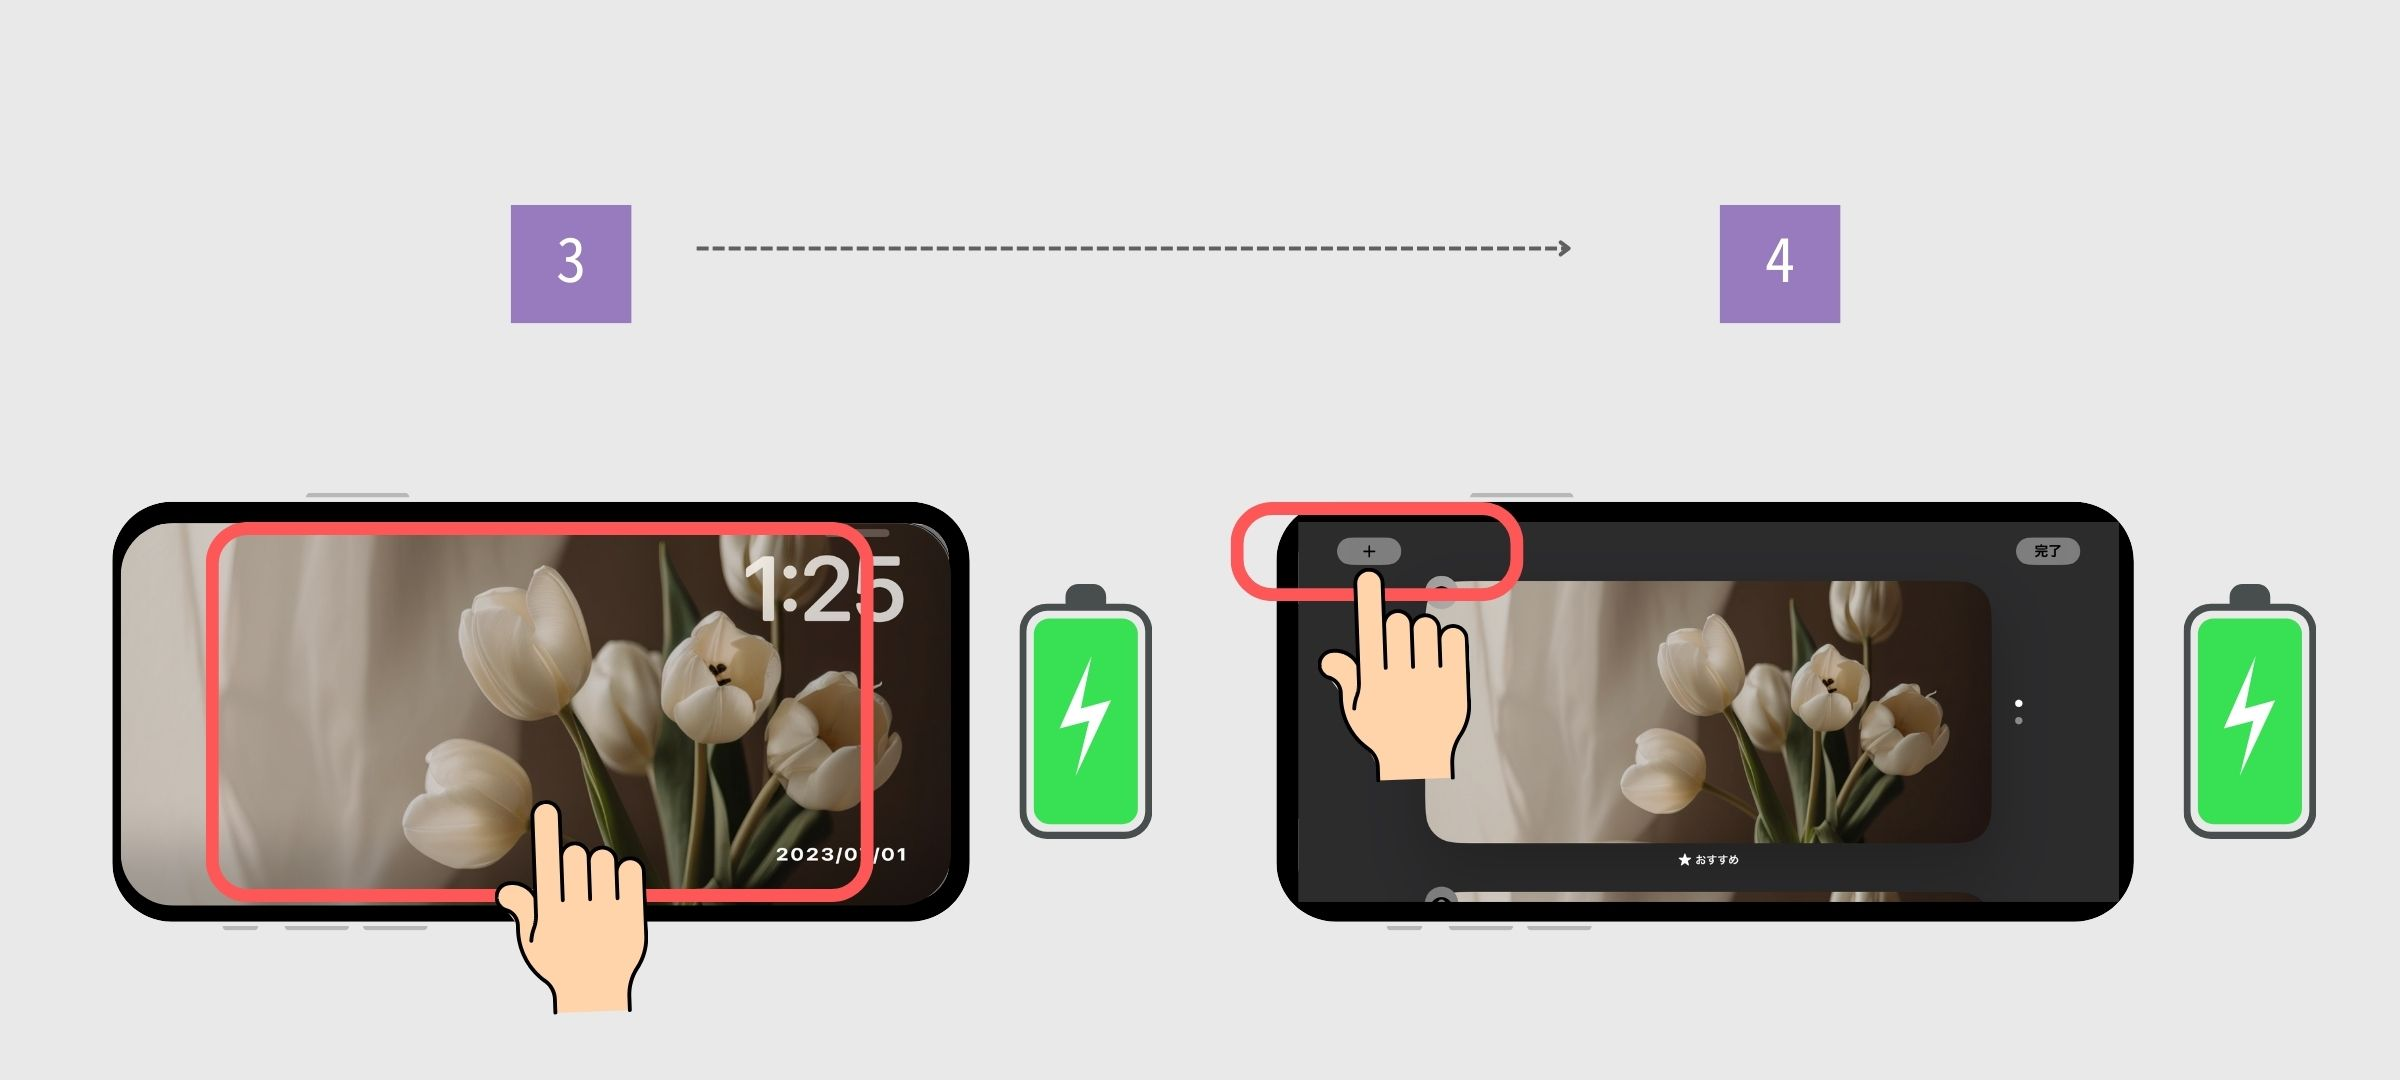 #17 如何在 iOS17 上使用待机模式的图片